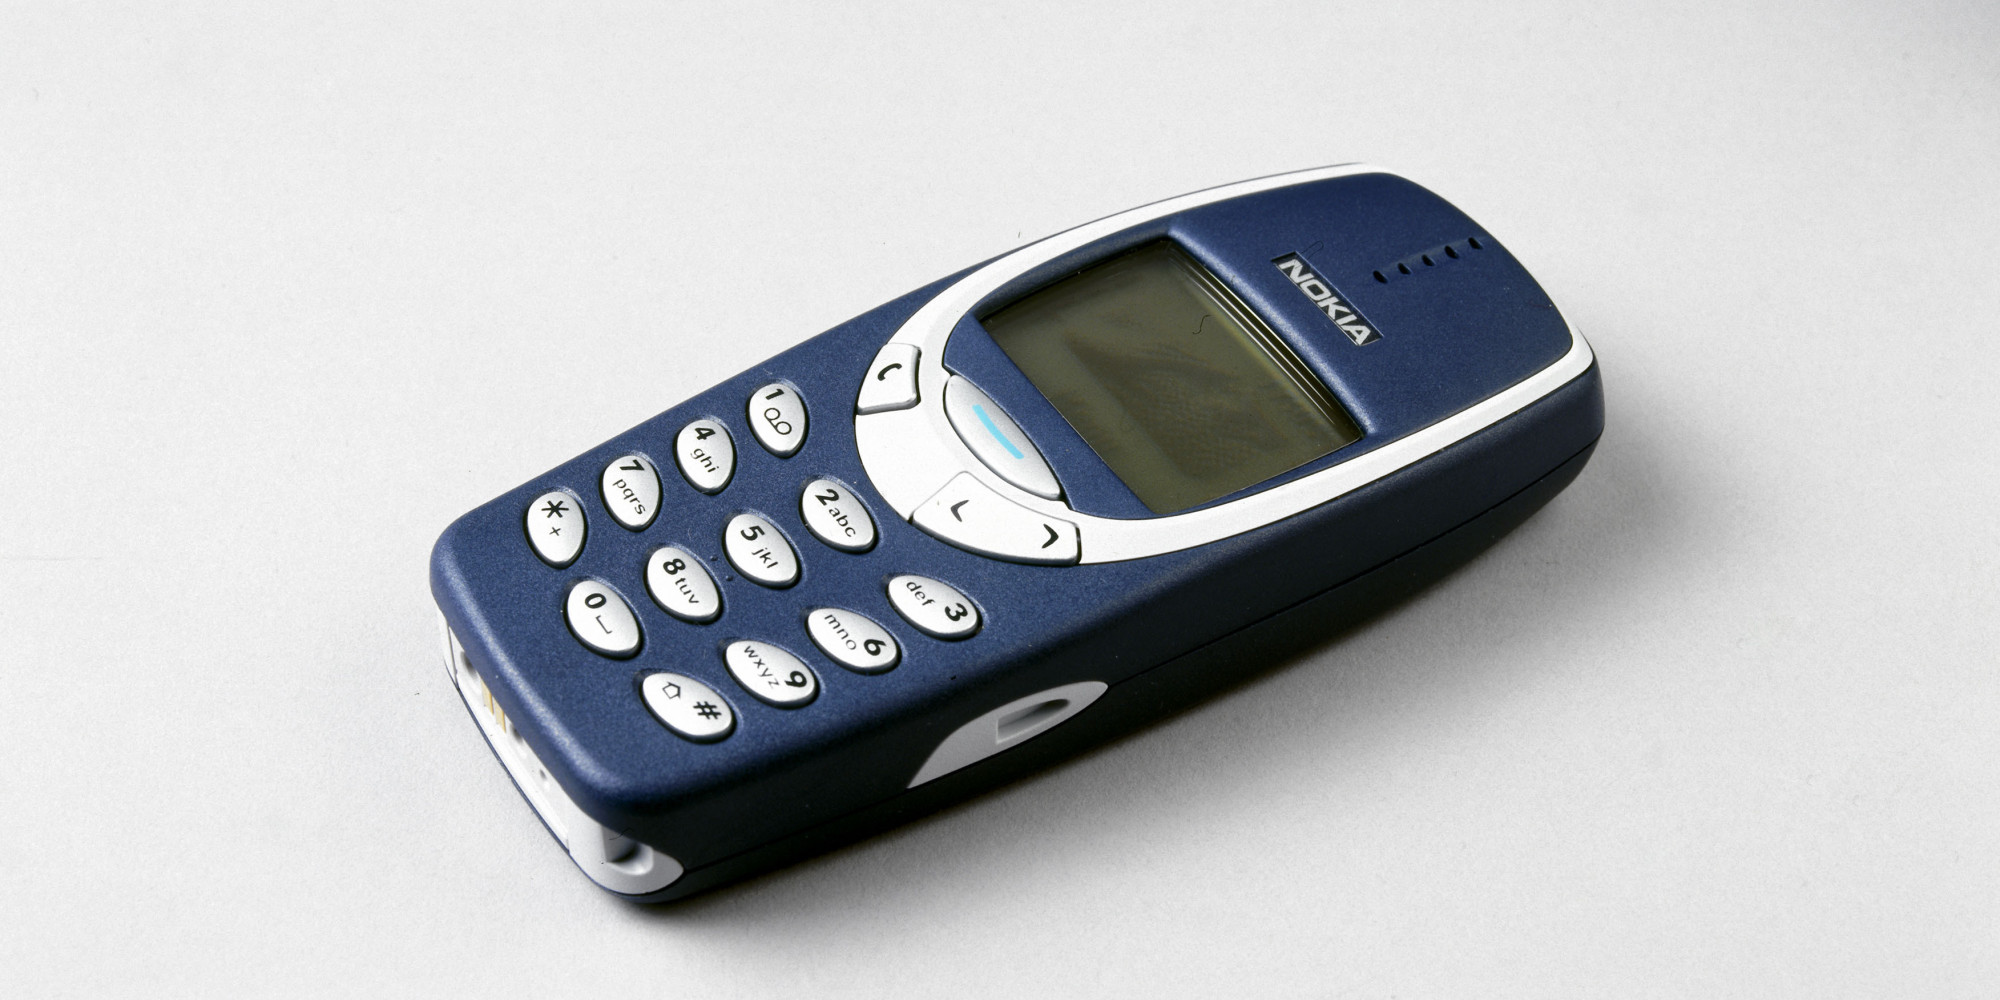 ¿Recuerdas el Nokia 3310? El esta de vuelta